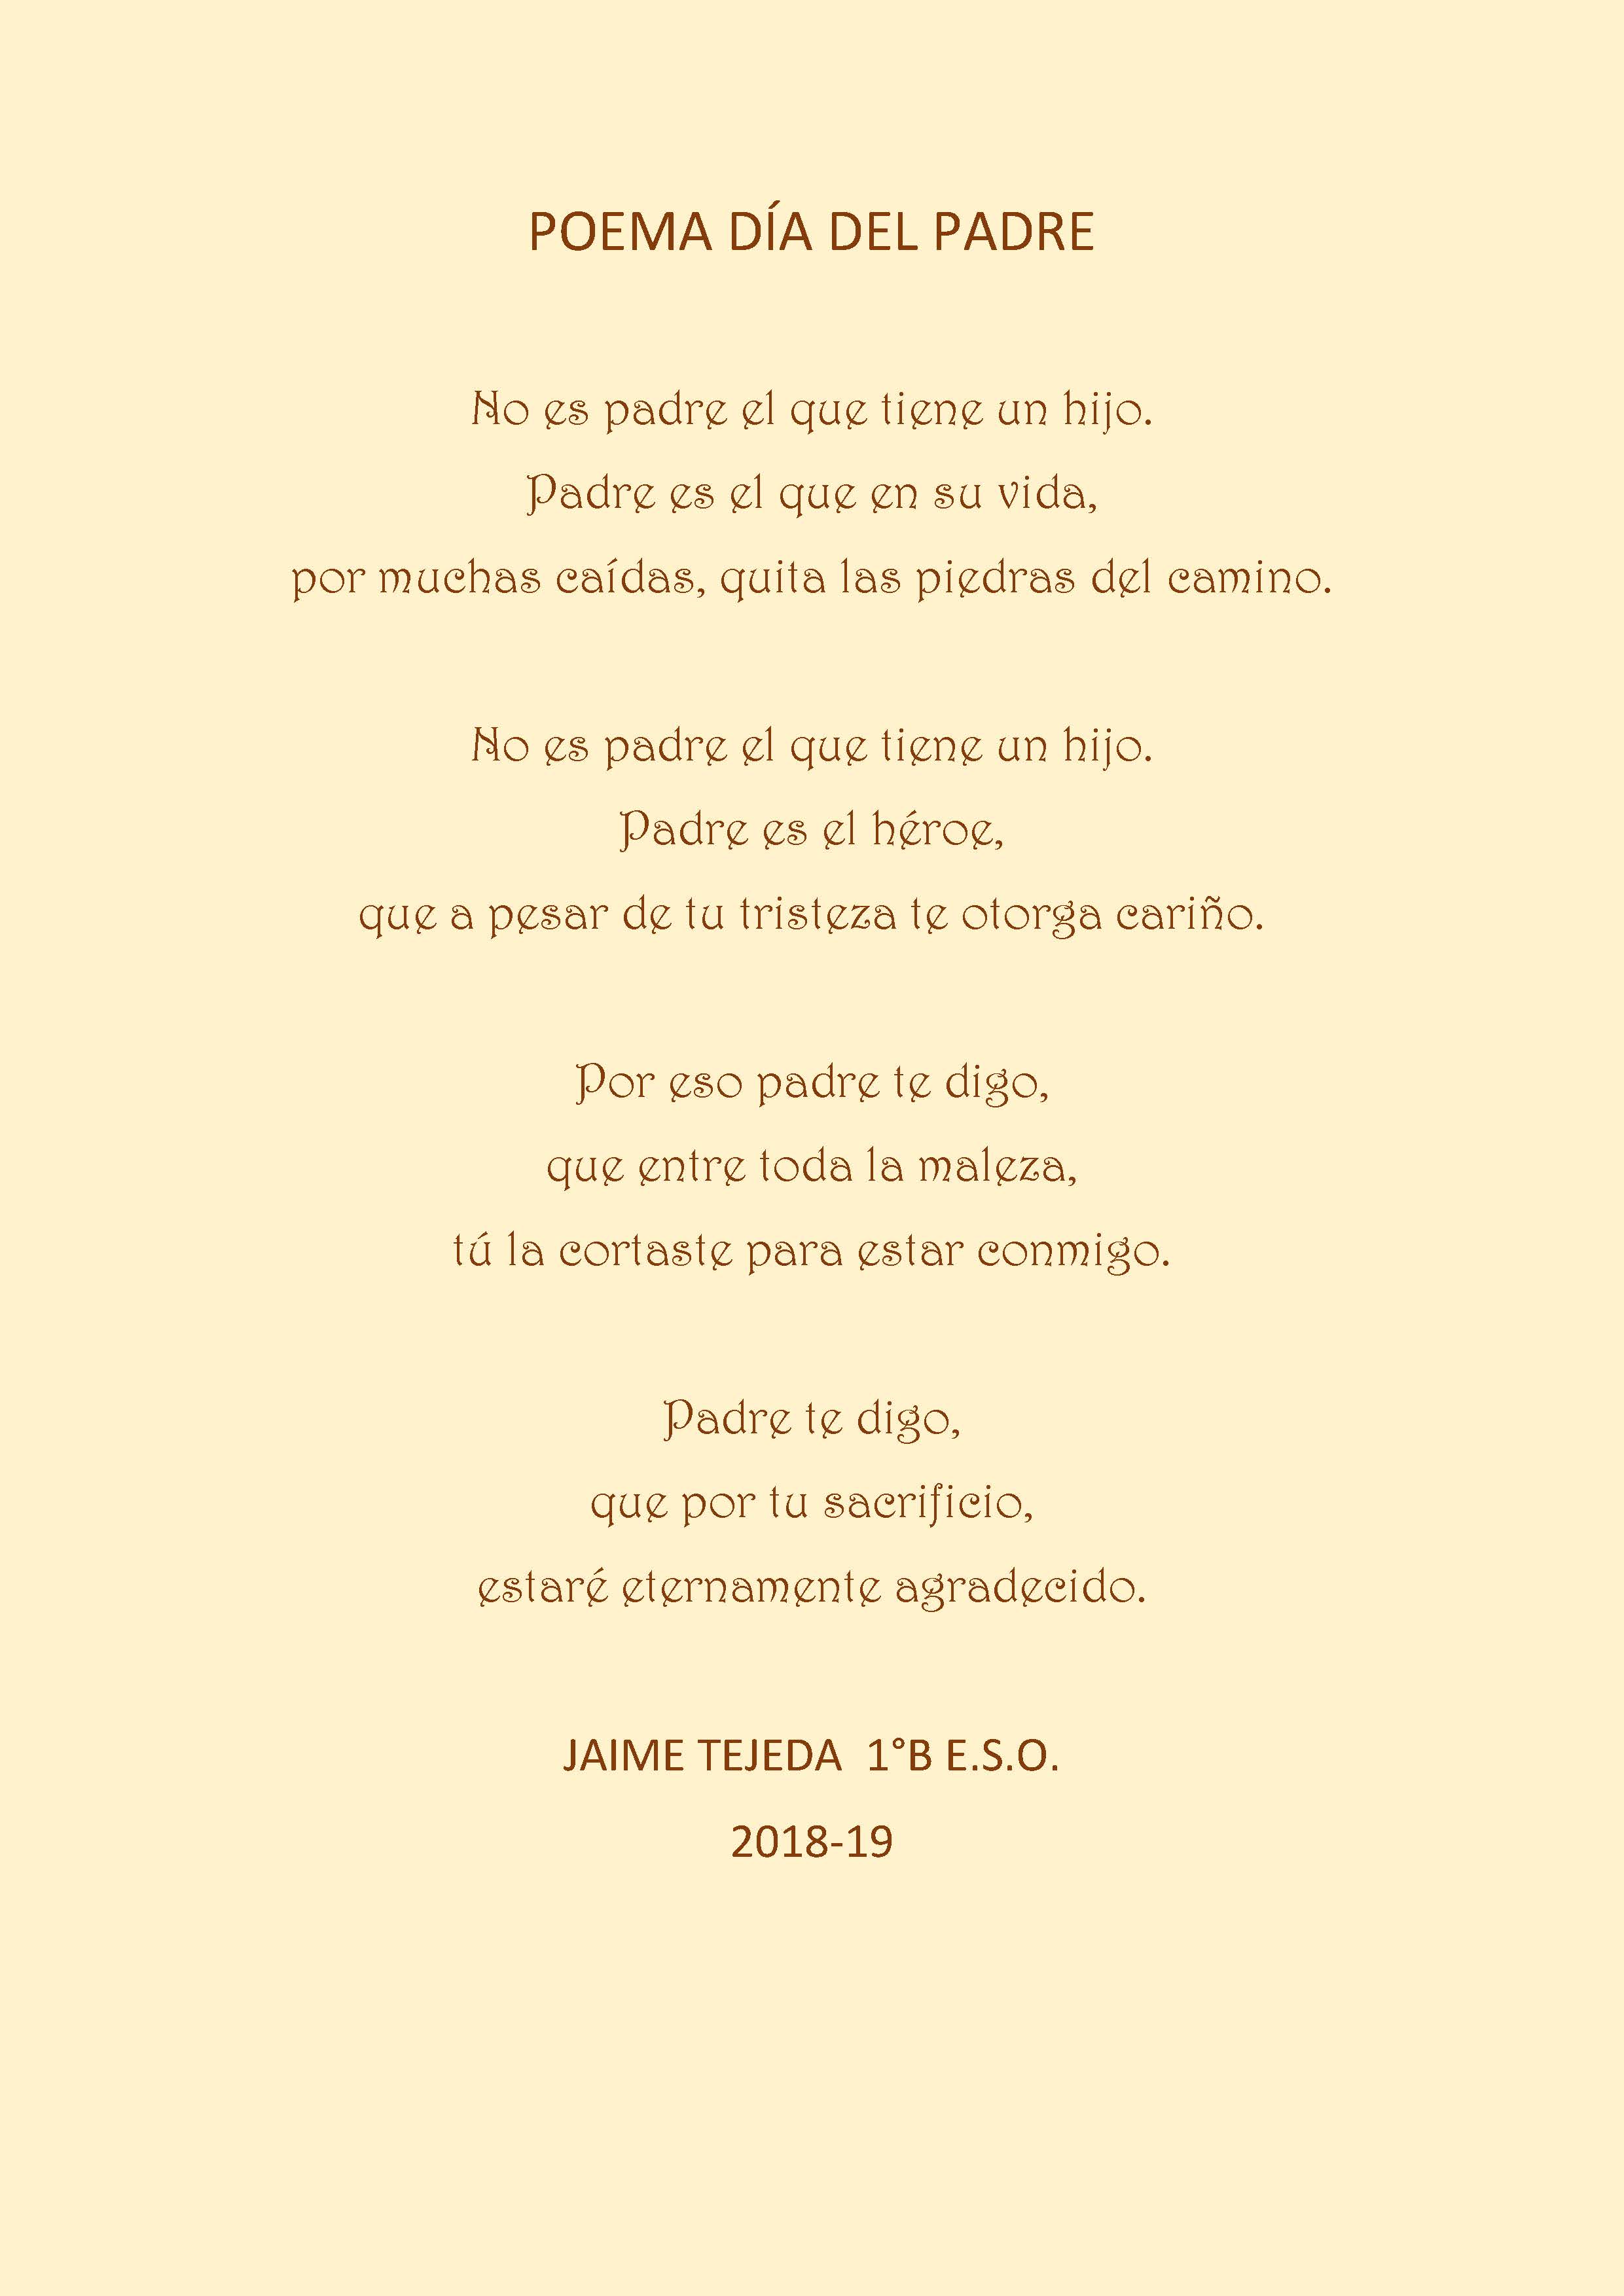 2018-19 Poema Día del Padre - Colegio Atenea